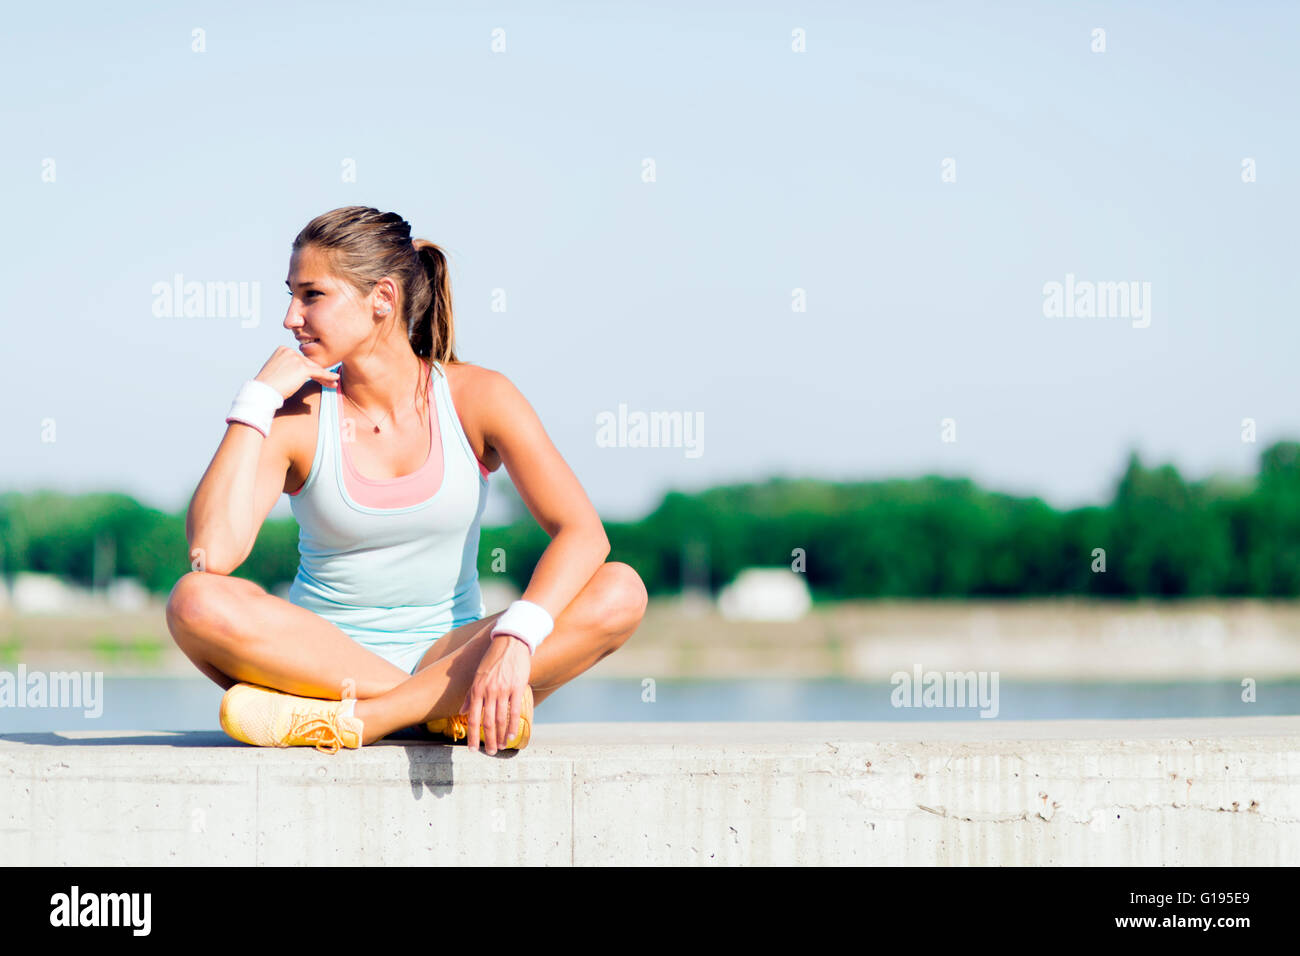 Mujer joven de estiramiento y relax en la ciudad antes del ejercicio Foto de stock